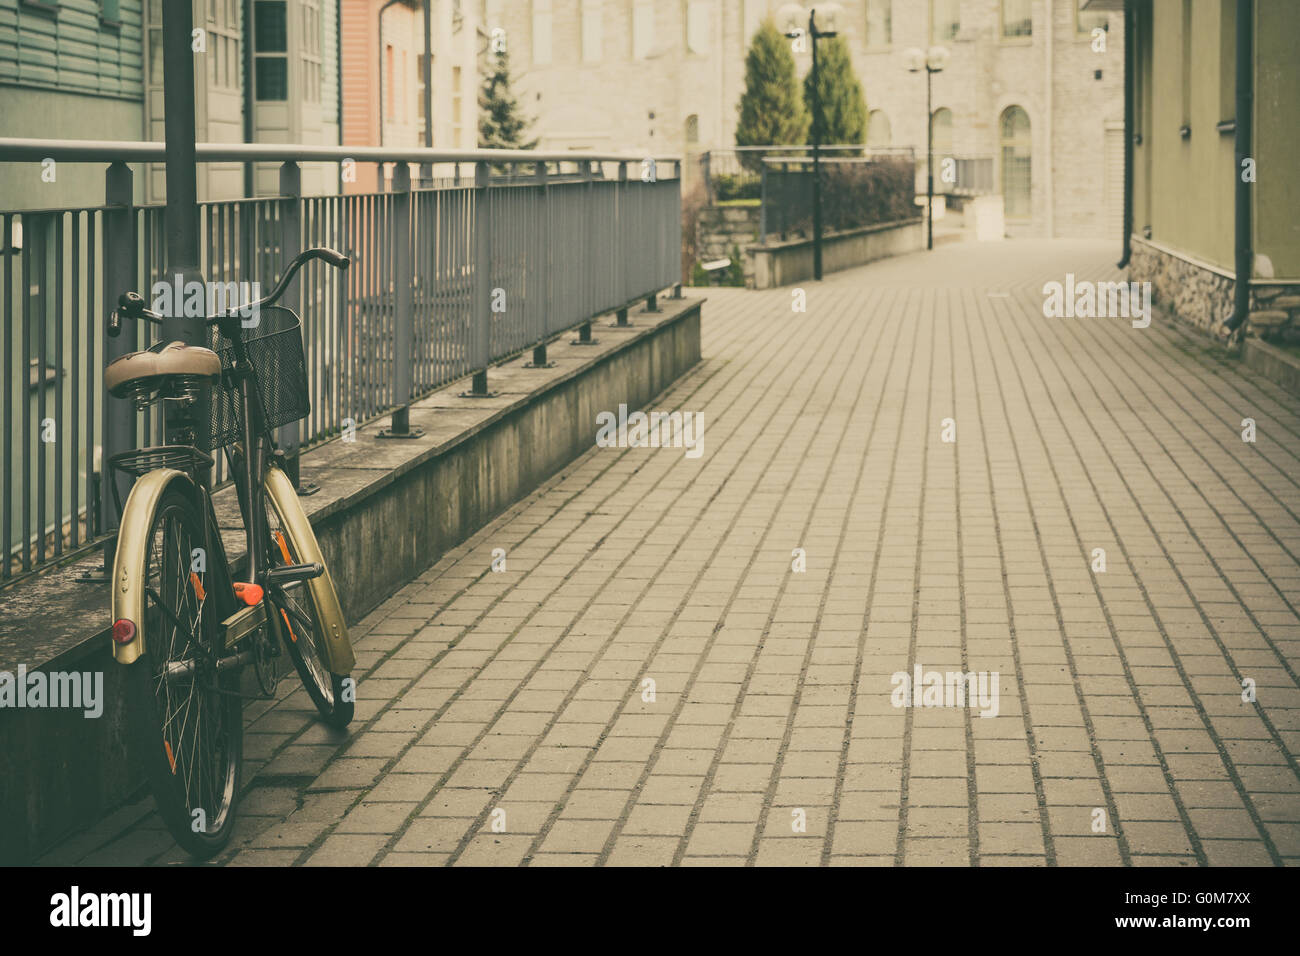 Escena urbana con retro-bicicleta en calle vacía, la imagen en tonos vintage Foto de stock